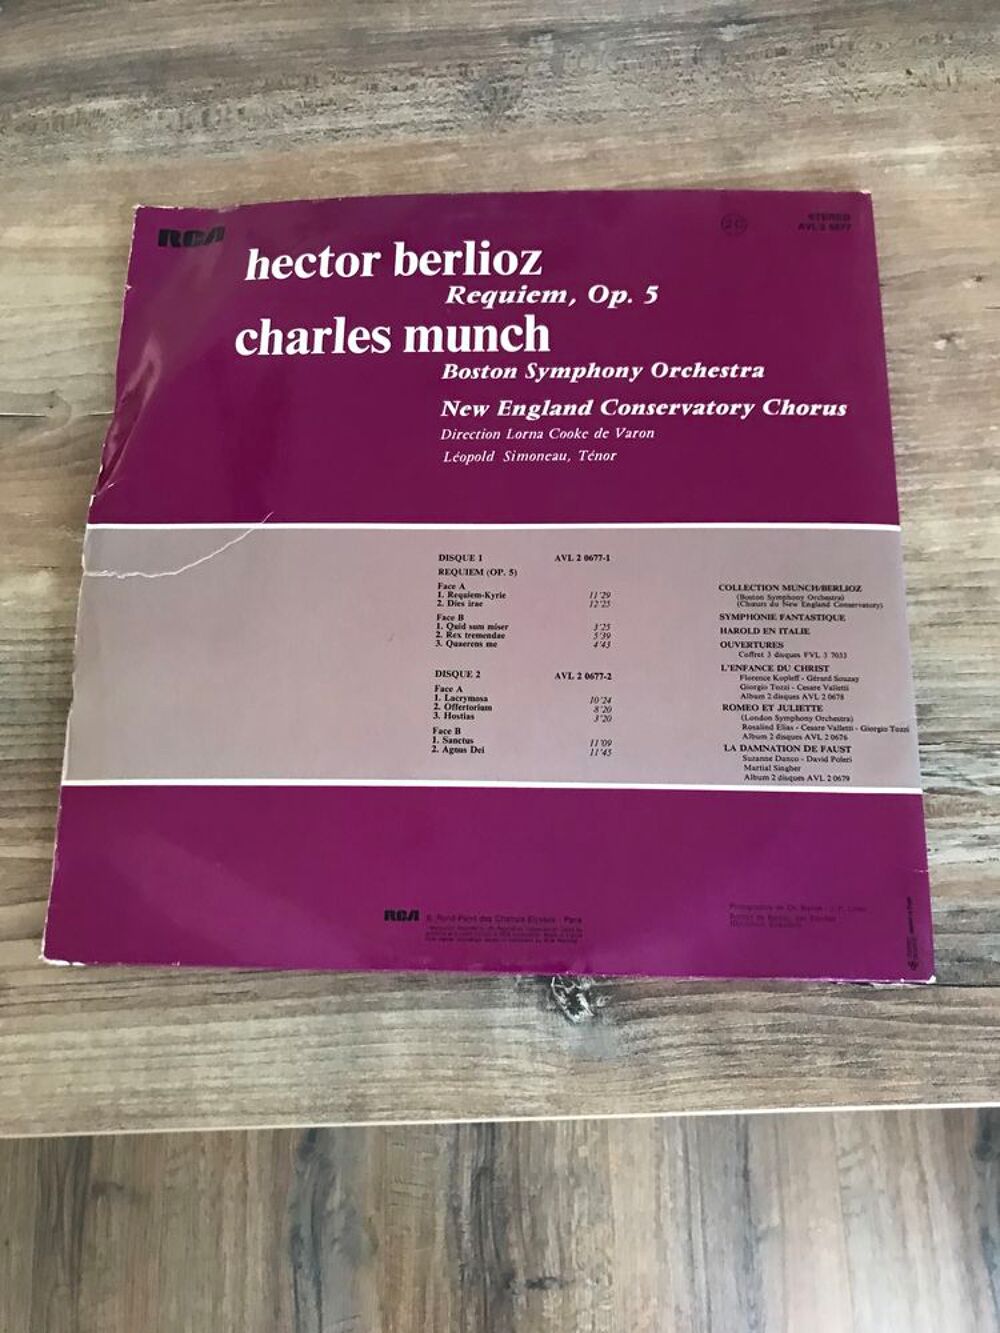 Vinyle double 33 tours Charles munch &quot; Hector berlioz CD et vinyles